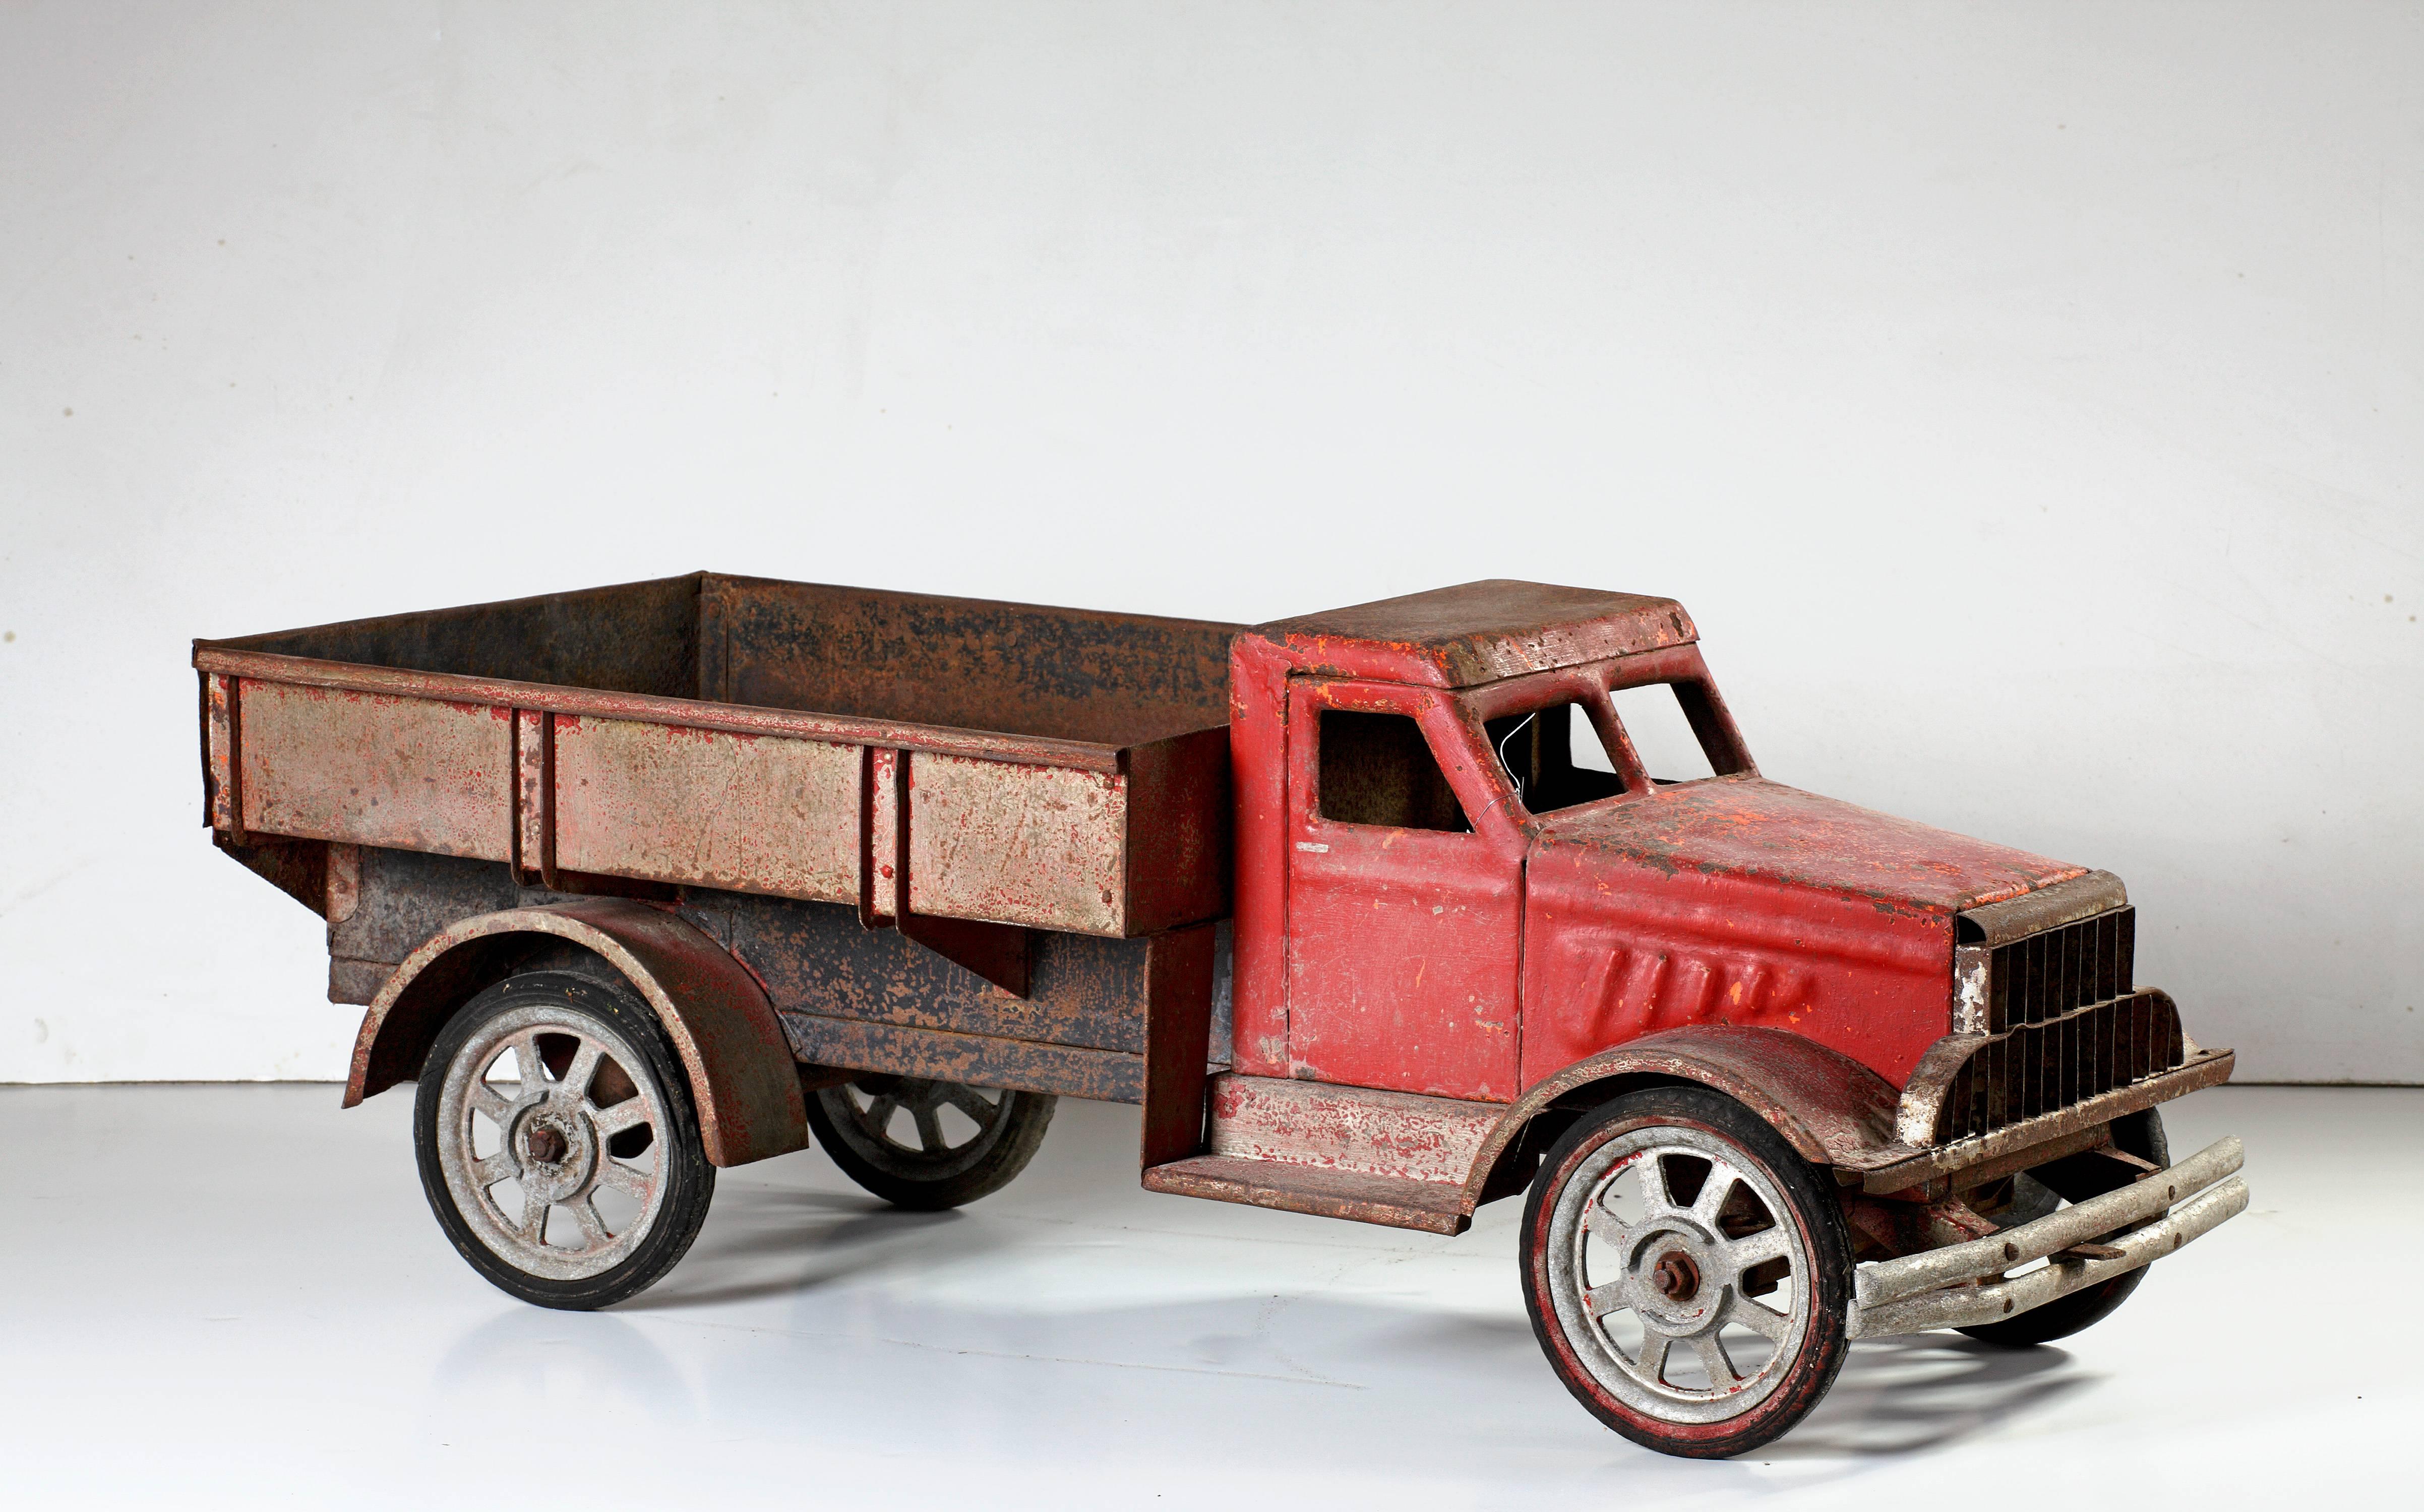 Un grand modèle de camion fabriqué dans le deuxième quart du 20e siècle. La cabine est rouge, la carrosserie et le plateau marron, au-dessus de roues à quatre rayons. D'après un camion américain Brockway. 

La voiture mesure 104 cm de long et 40